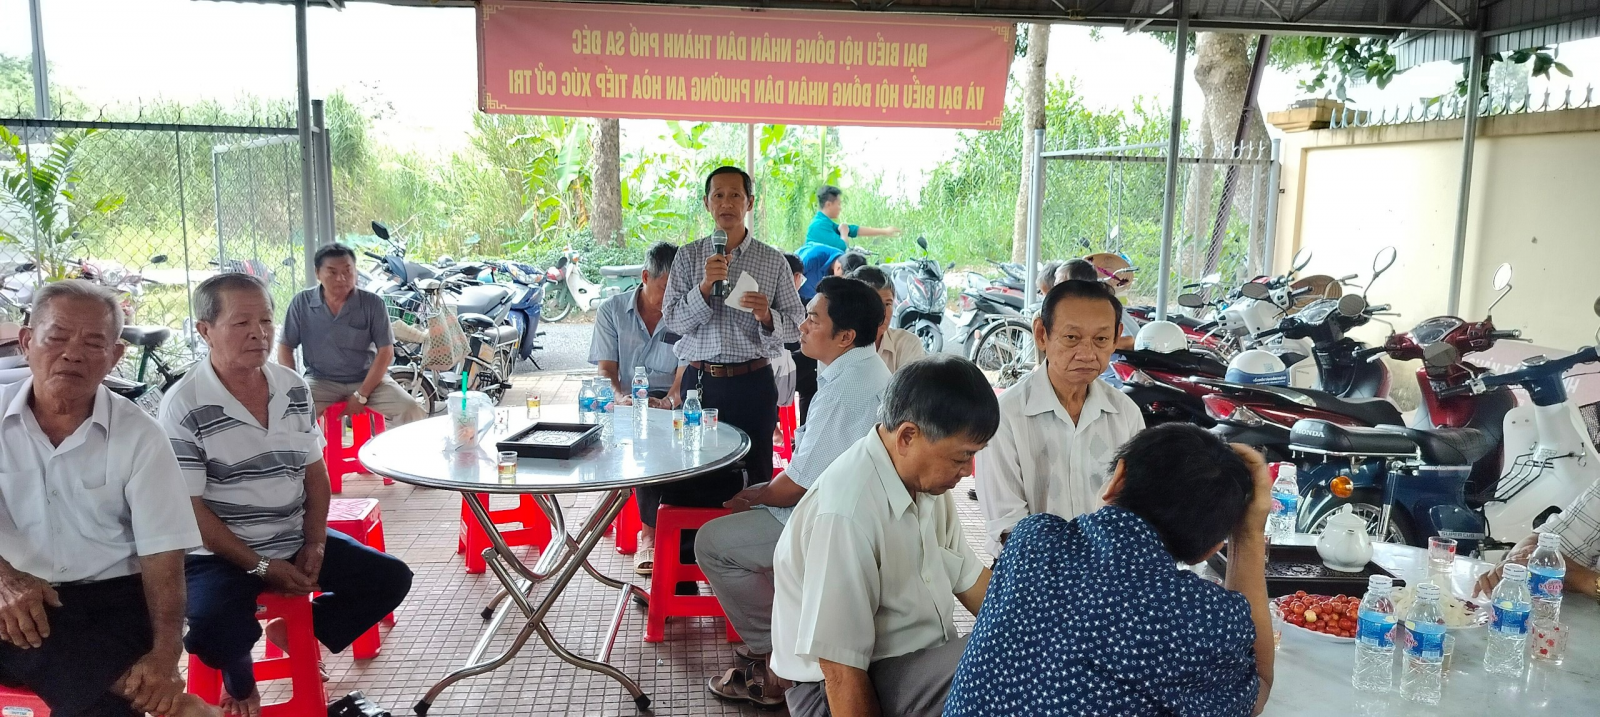 Cử tri khóm Tân Thuận đóng góp ý kiến tại buổi tiếp xúc cử tri